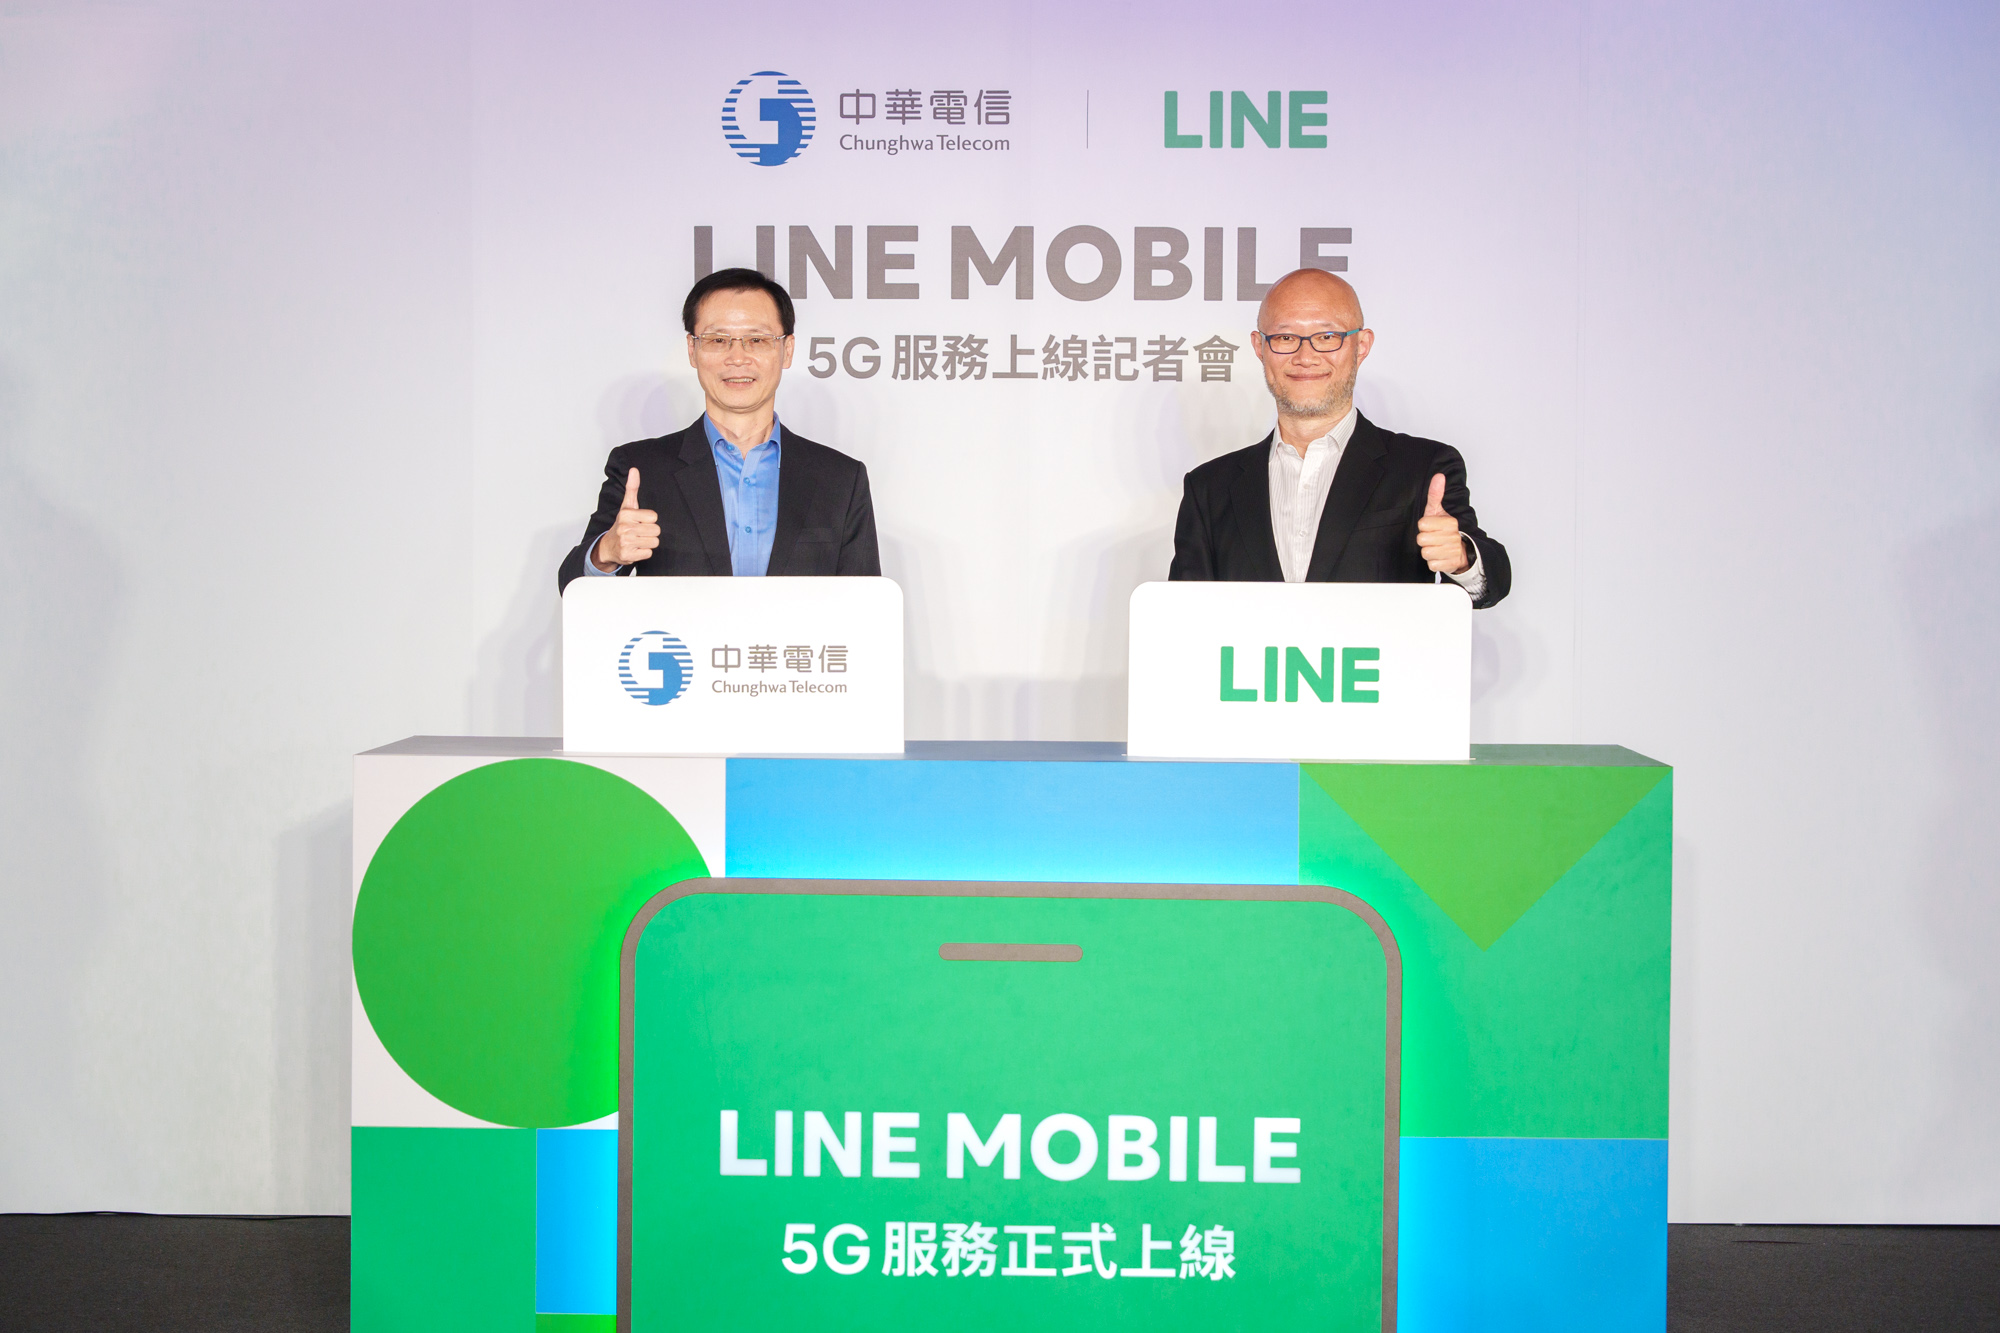 中華電信、LINE擴大結盟 強強聯手推LINE MOBILE 5G服務